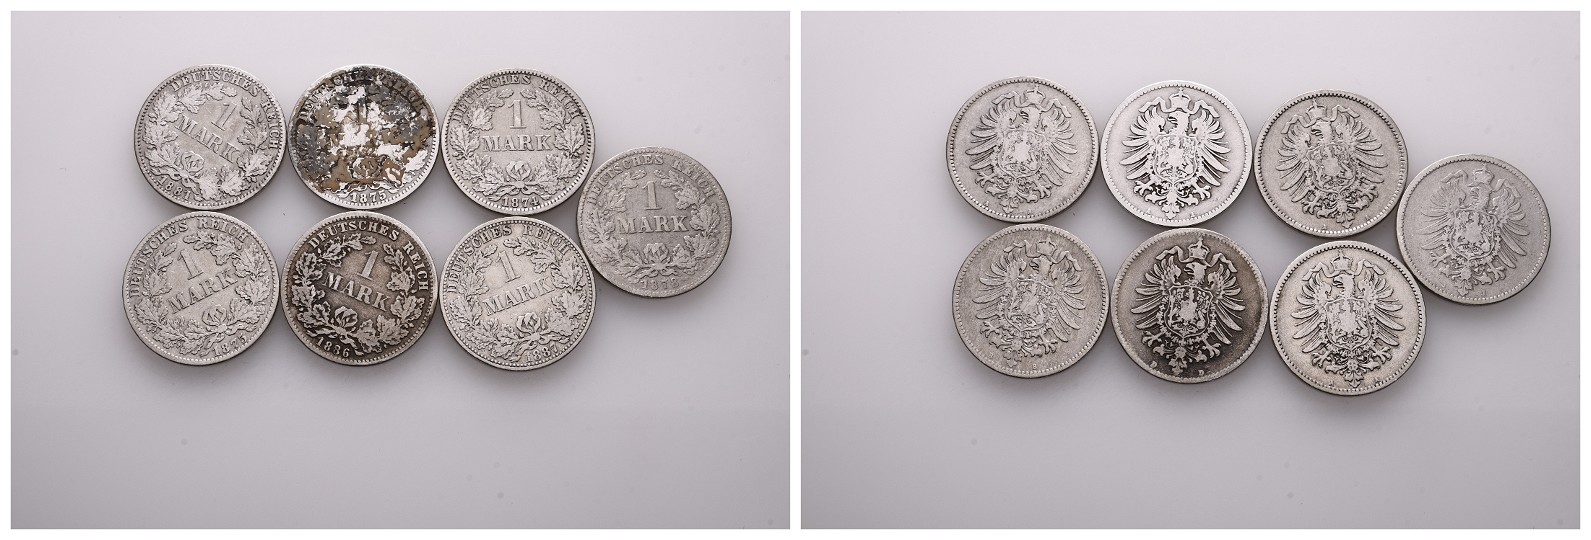  MGS BRD Kursmünzensatz 2007 G + 3 Serien Jahrgangsbriefmarken vertrieben durch DEUTSCHE POST   